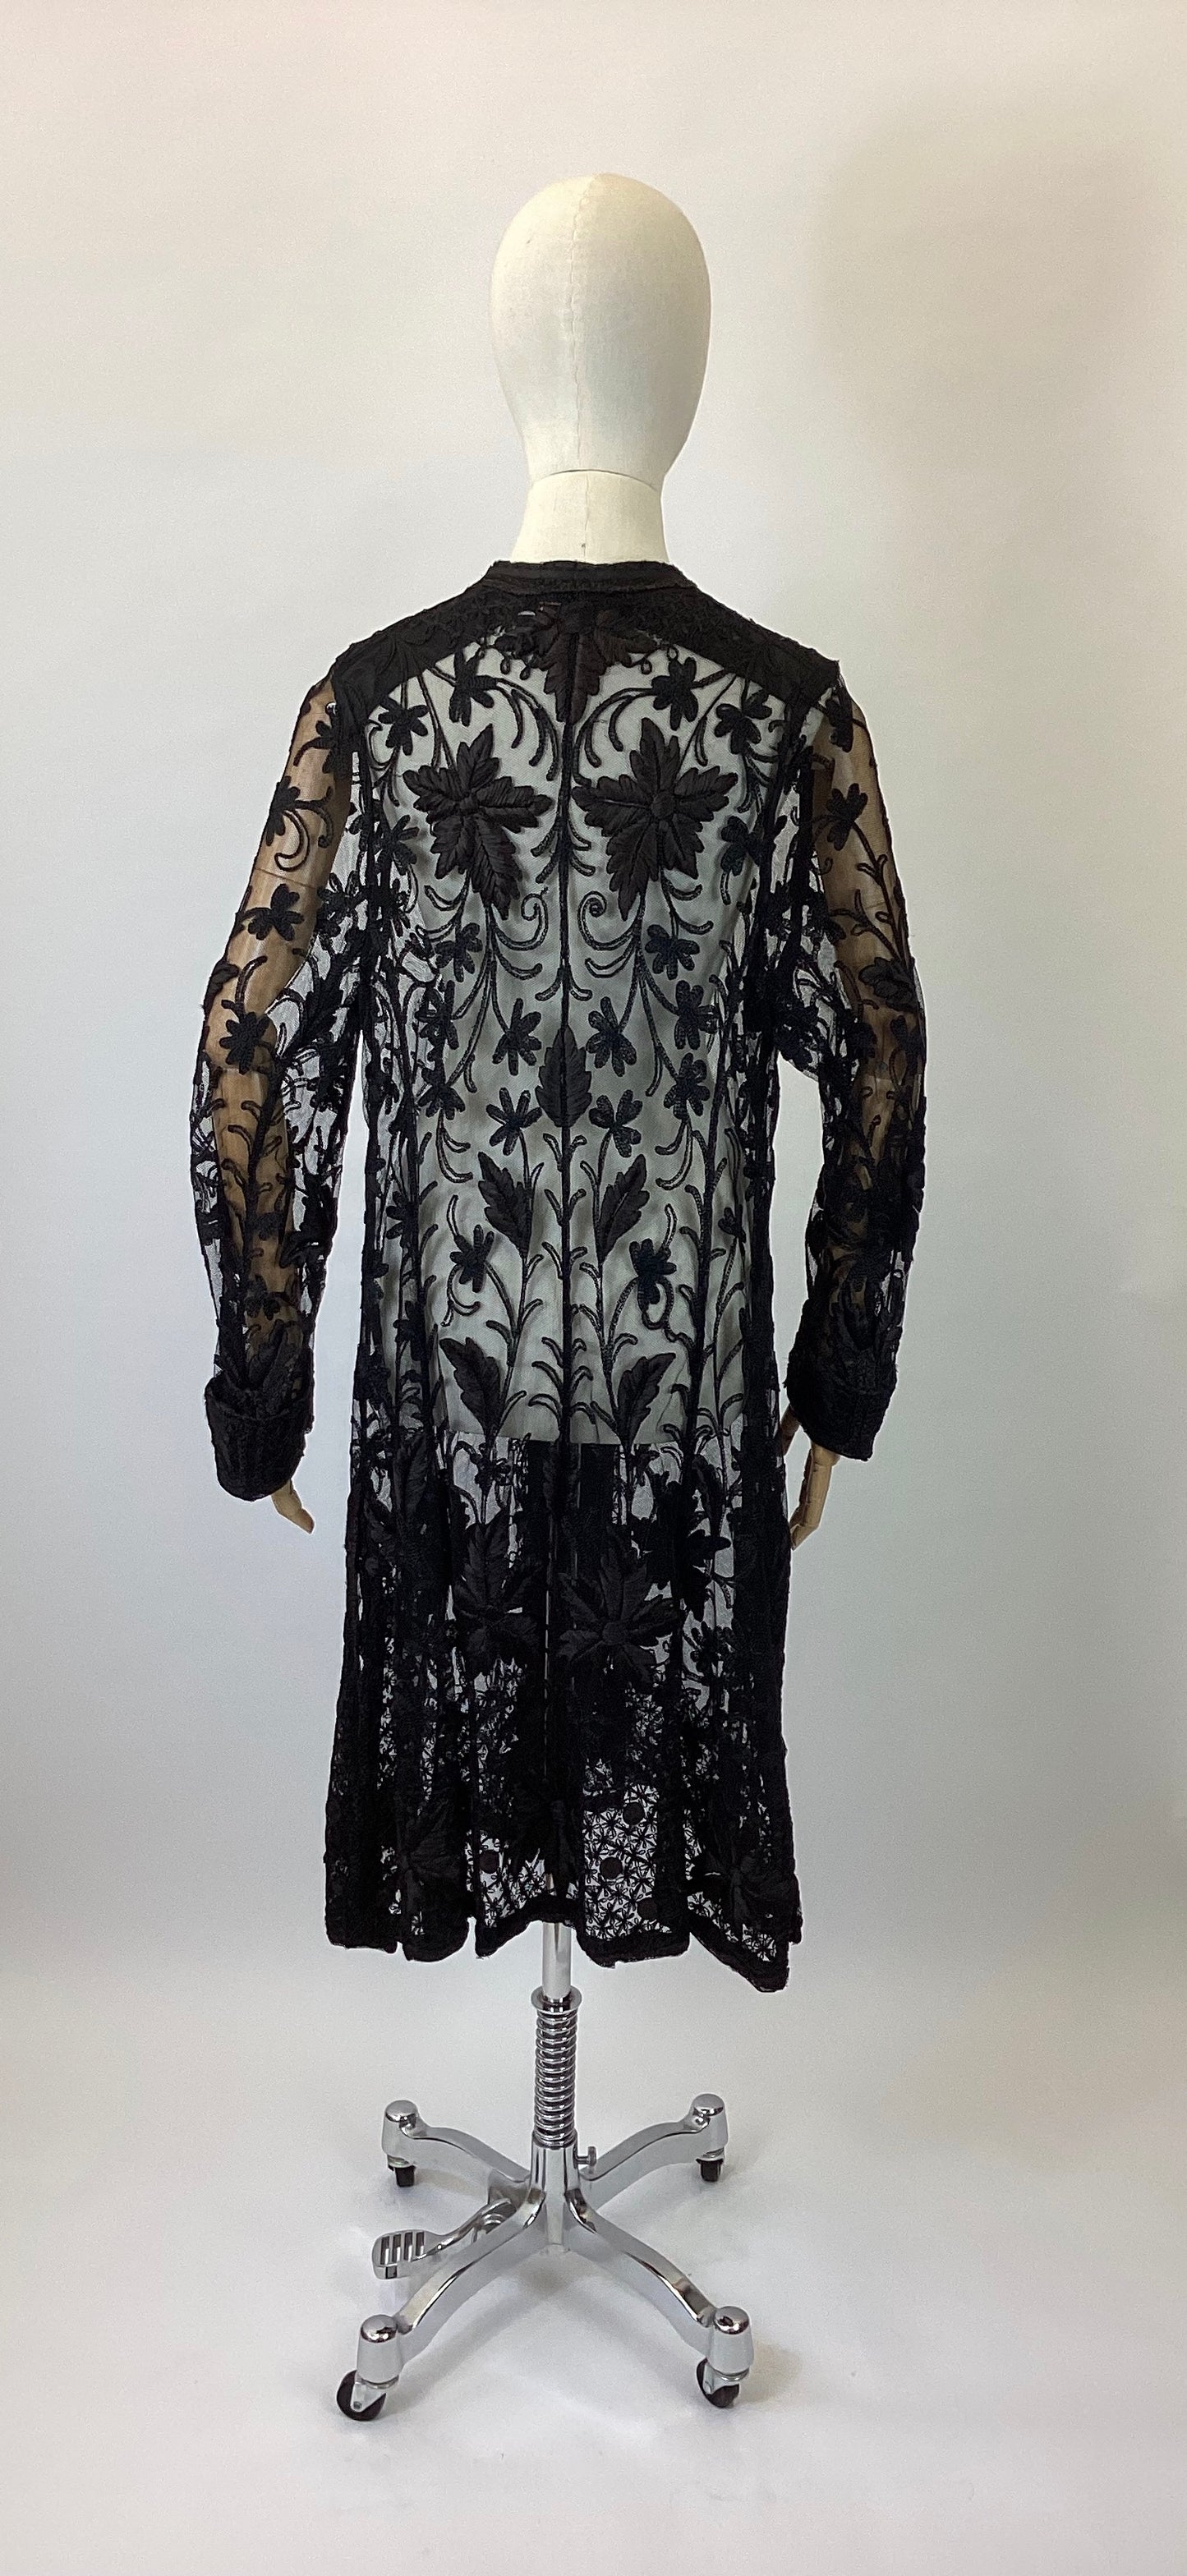 Original 1910’s Exquisite coat - Black Sheer Lace